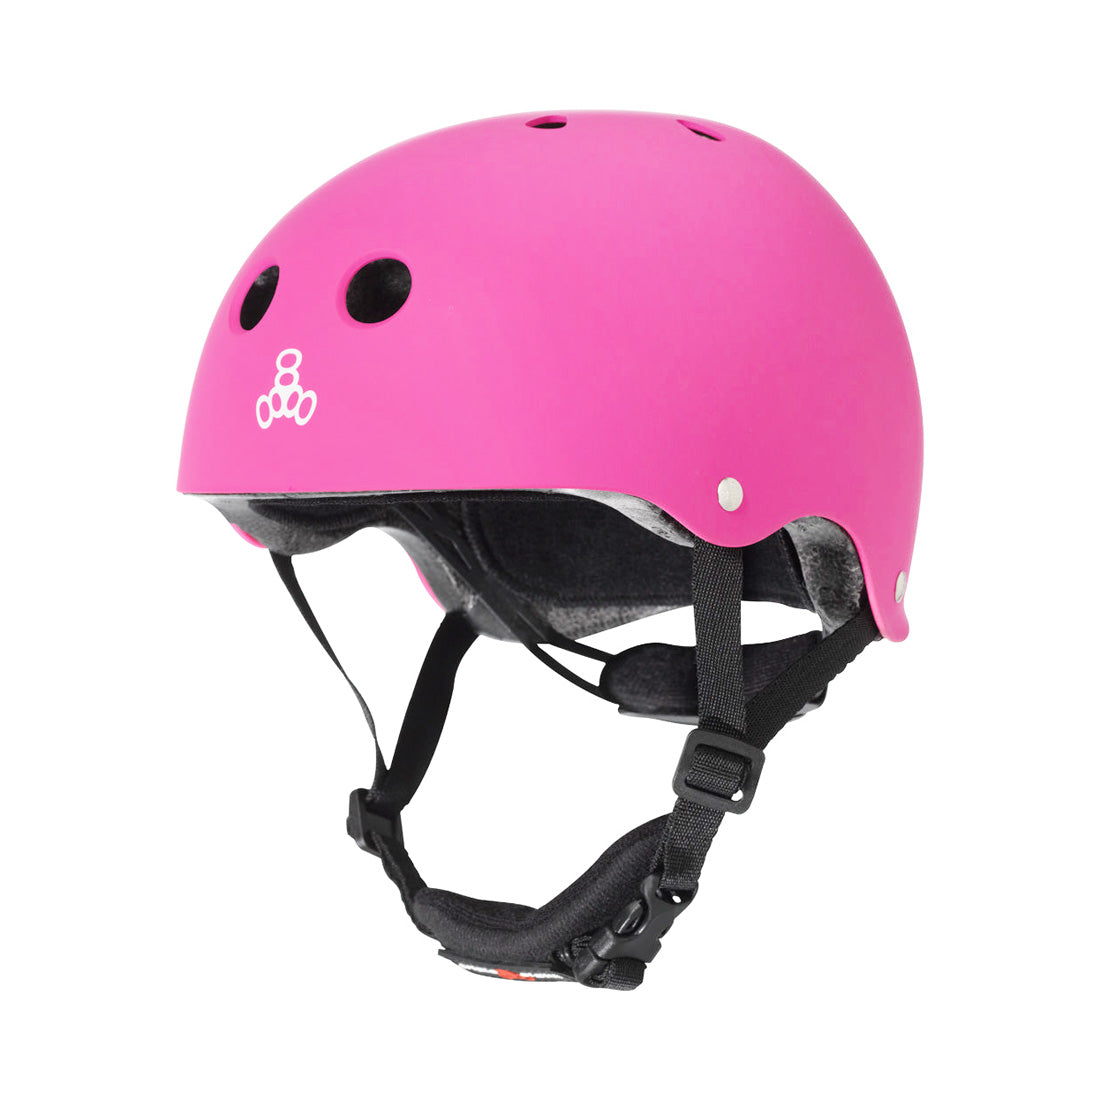 Triple 8 LIL8 Youth Bike Helmet - Neon Pink Rubber Helmets